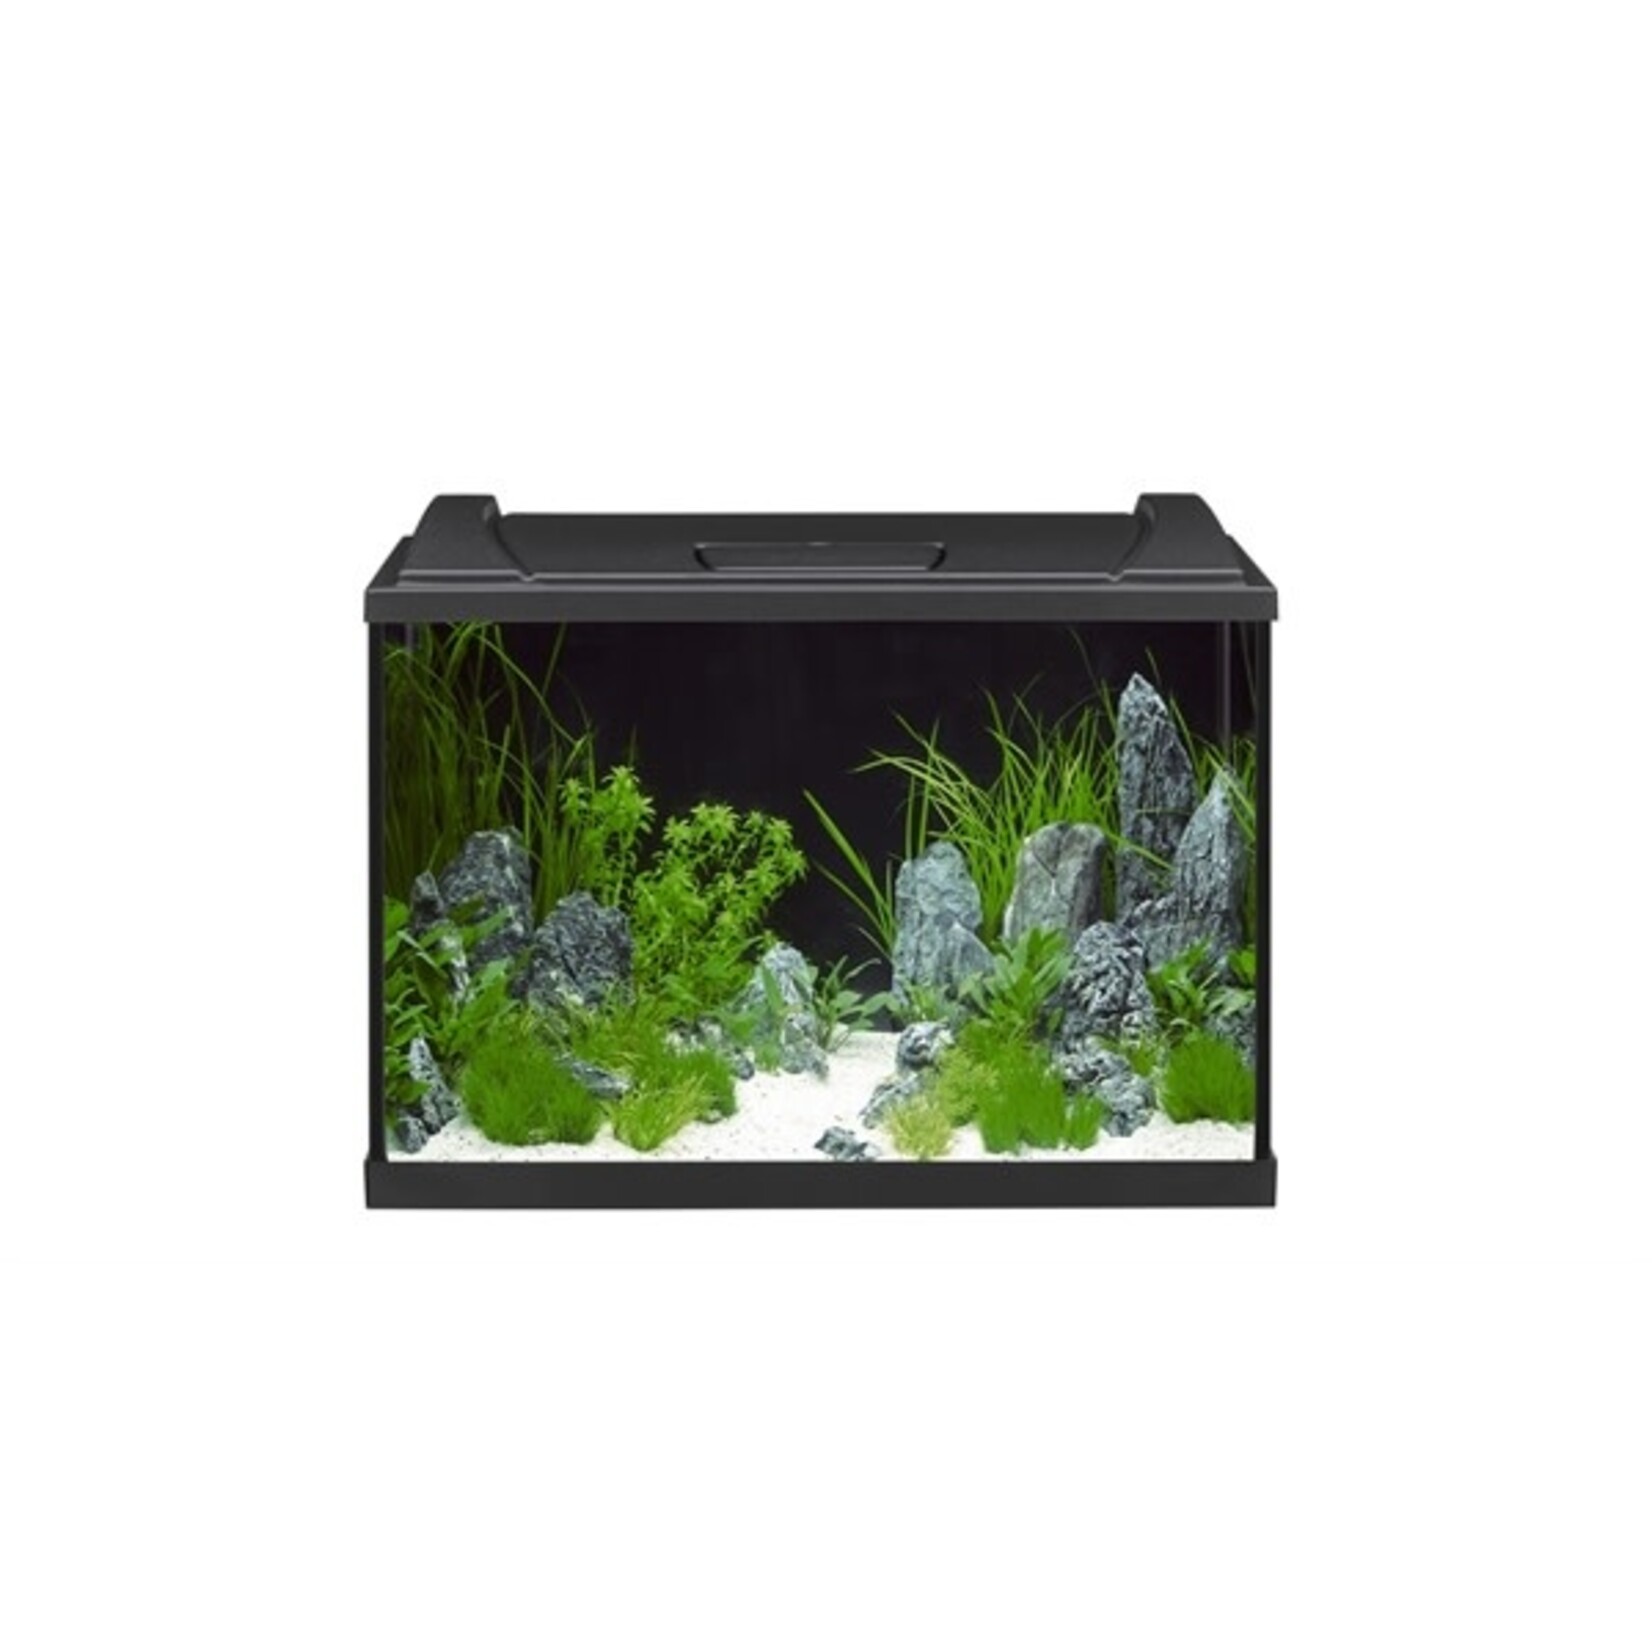 Eheim aquarium aquaproLED 84 zwart 60x35x40 cm 1x12w